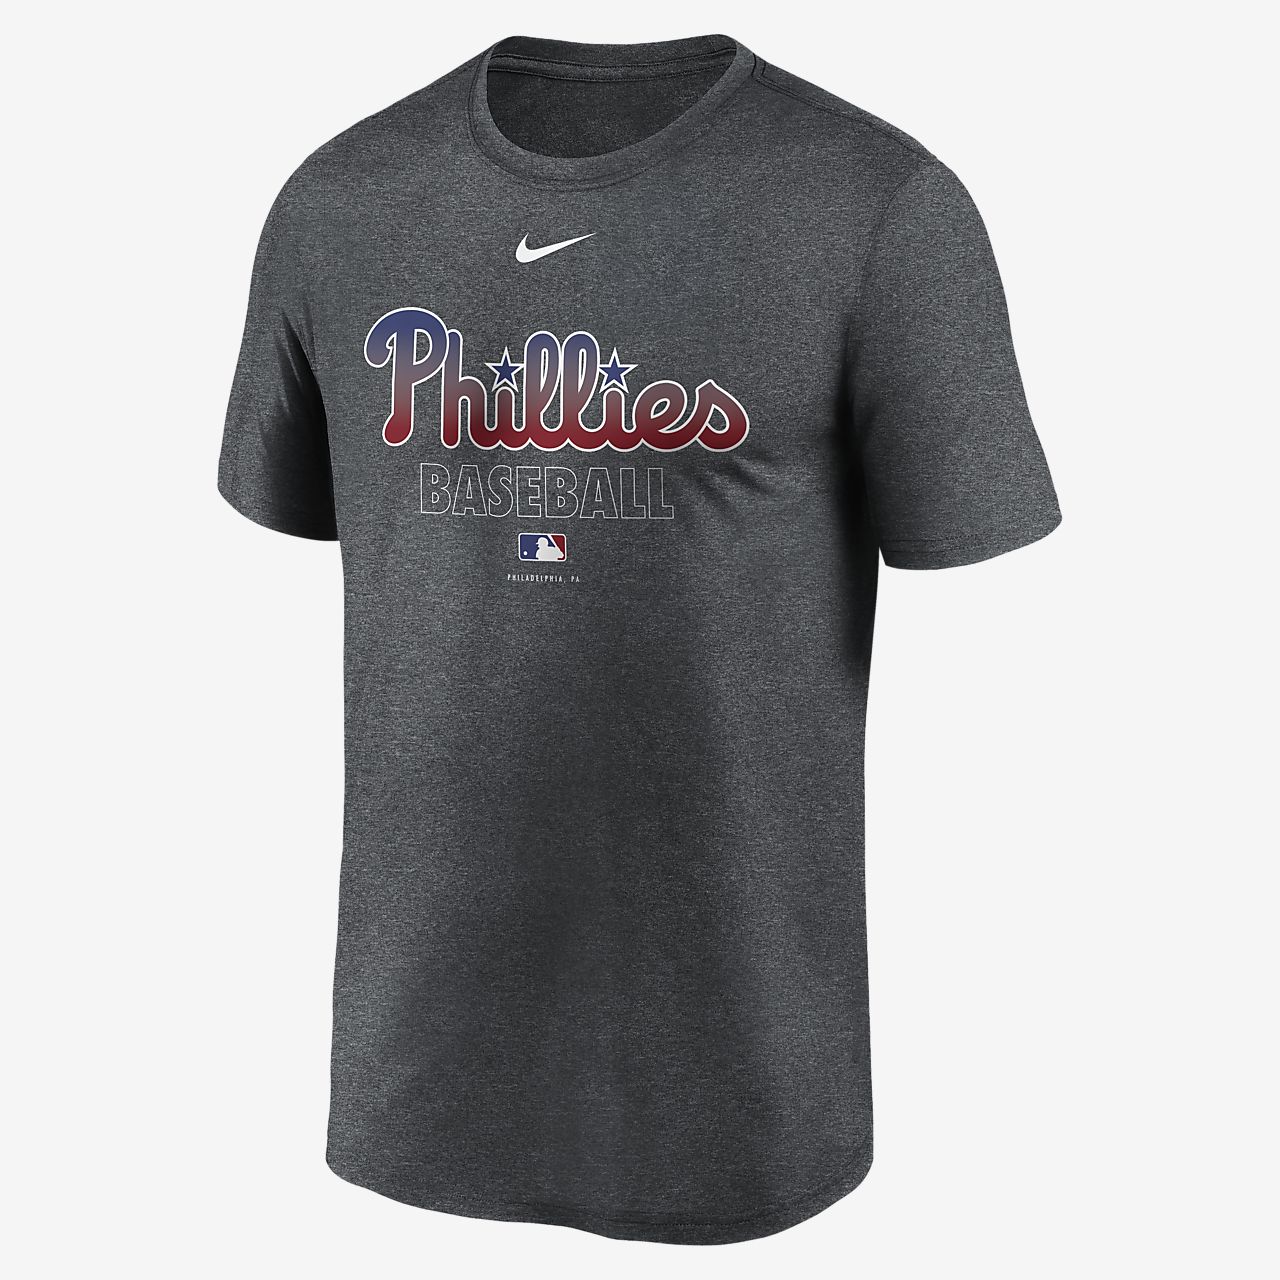 Nike Dri-FIT Legend (MLB Philadelphia Phillies) Men's T-Shirt. Nike.com